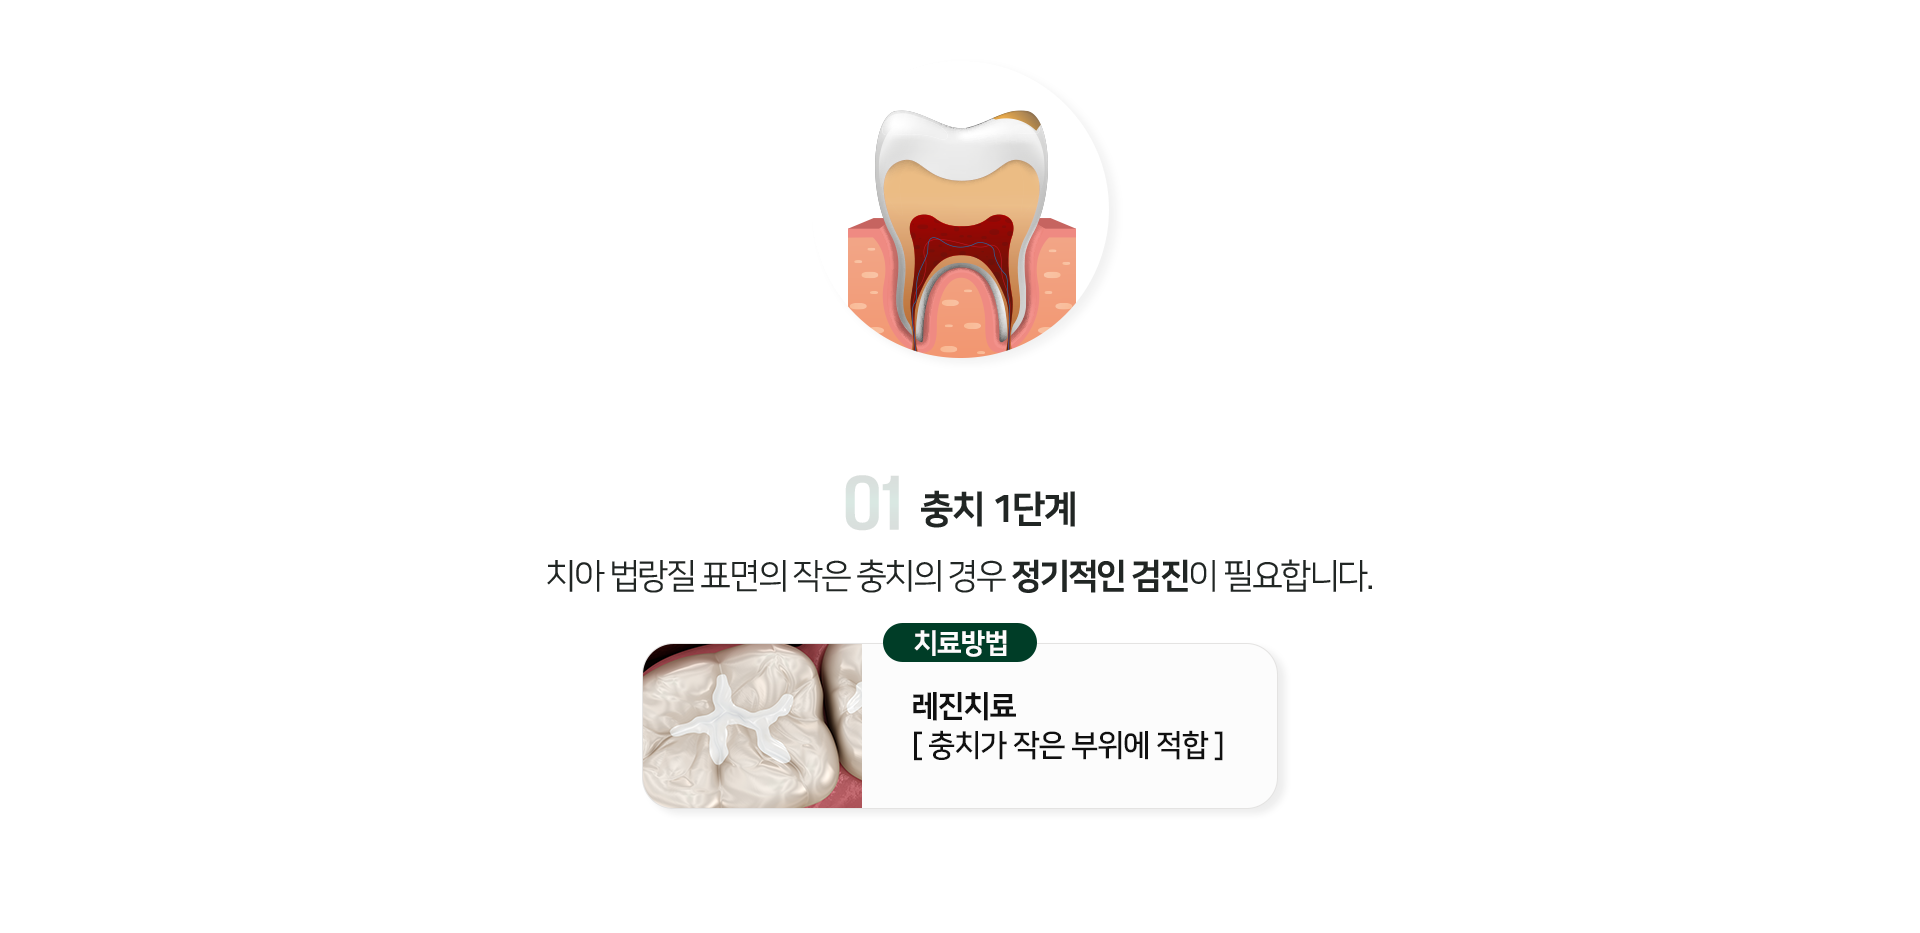 충치-1단계-치아-법랑질-표면의-작은-충치의-경우-정기적인-검진이-필요합니다-치료방법-레진치료-충치가-작은-부위에-적합